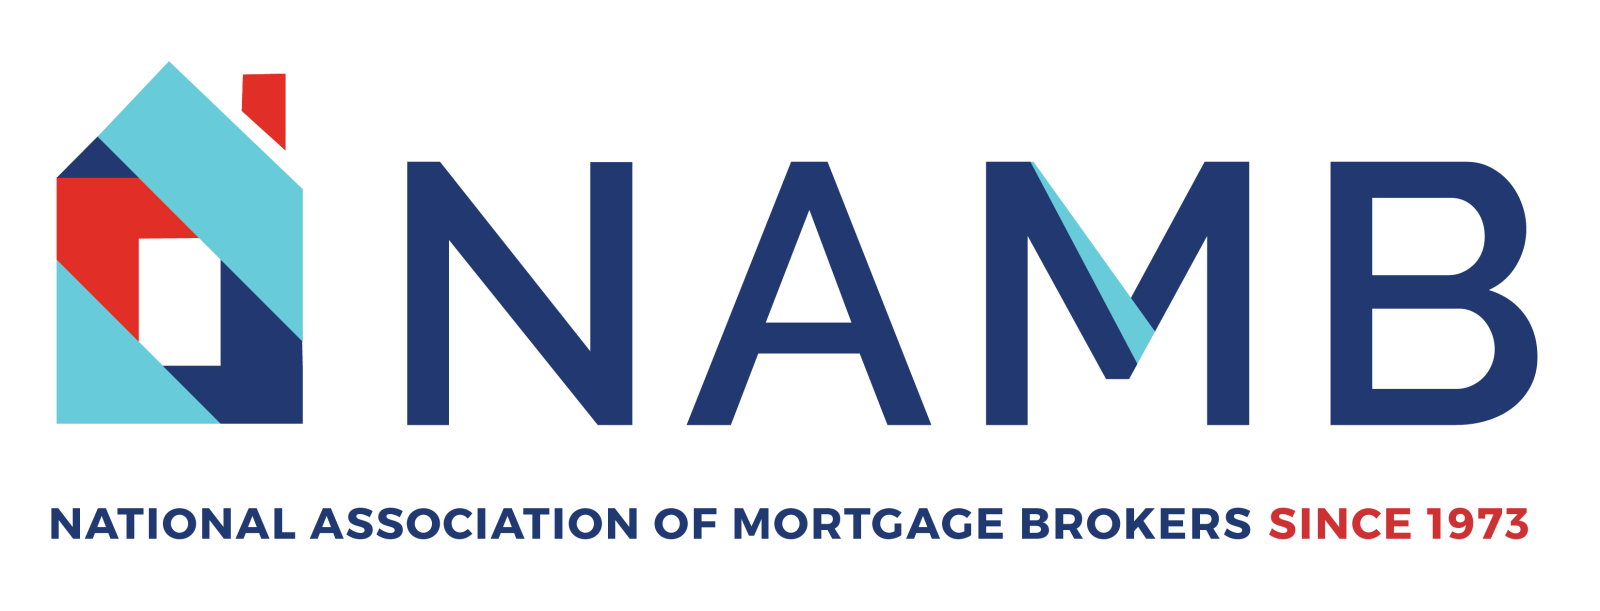 NAMB logo